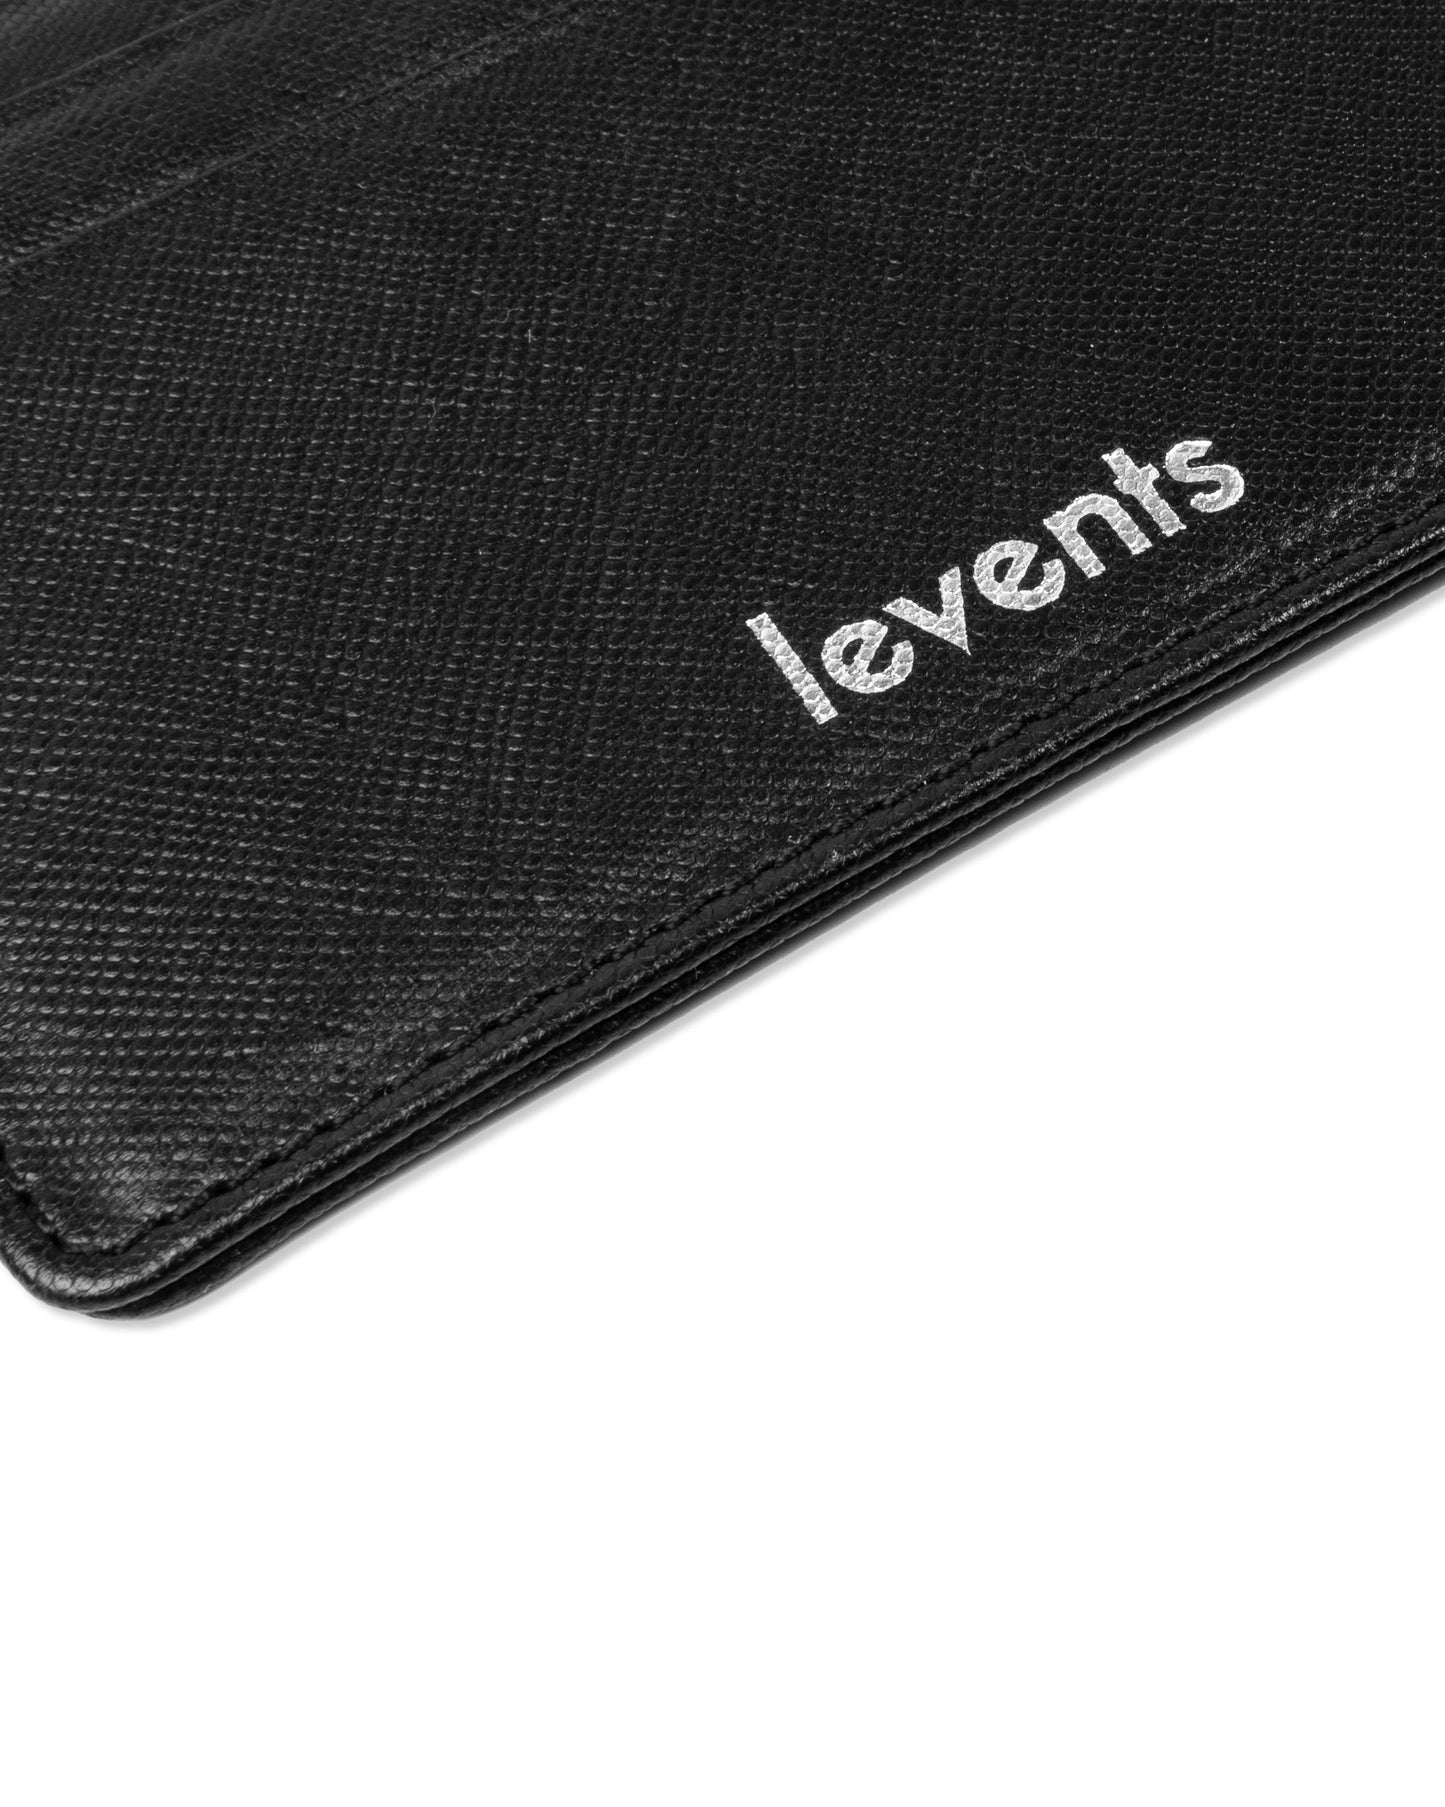 Levents® Card Holder/ Black